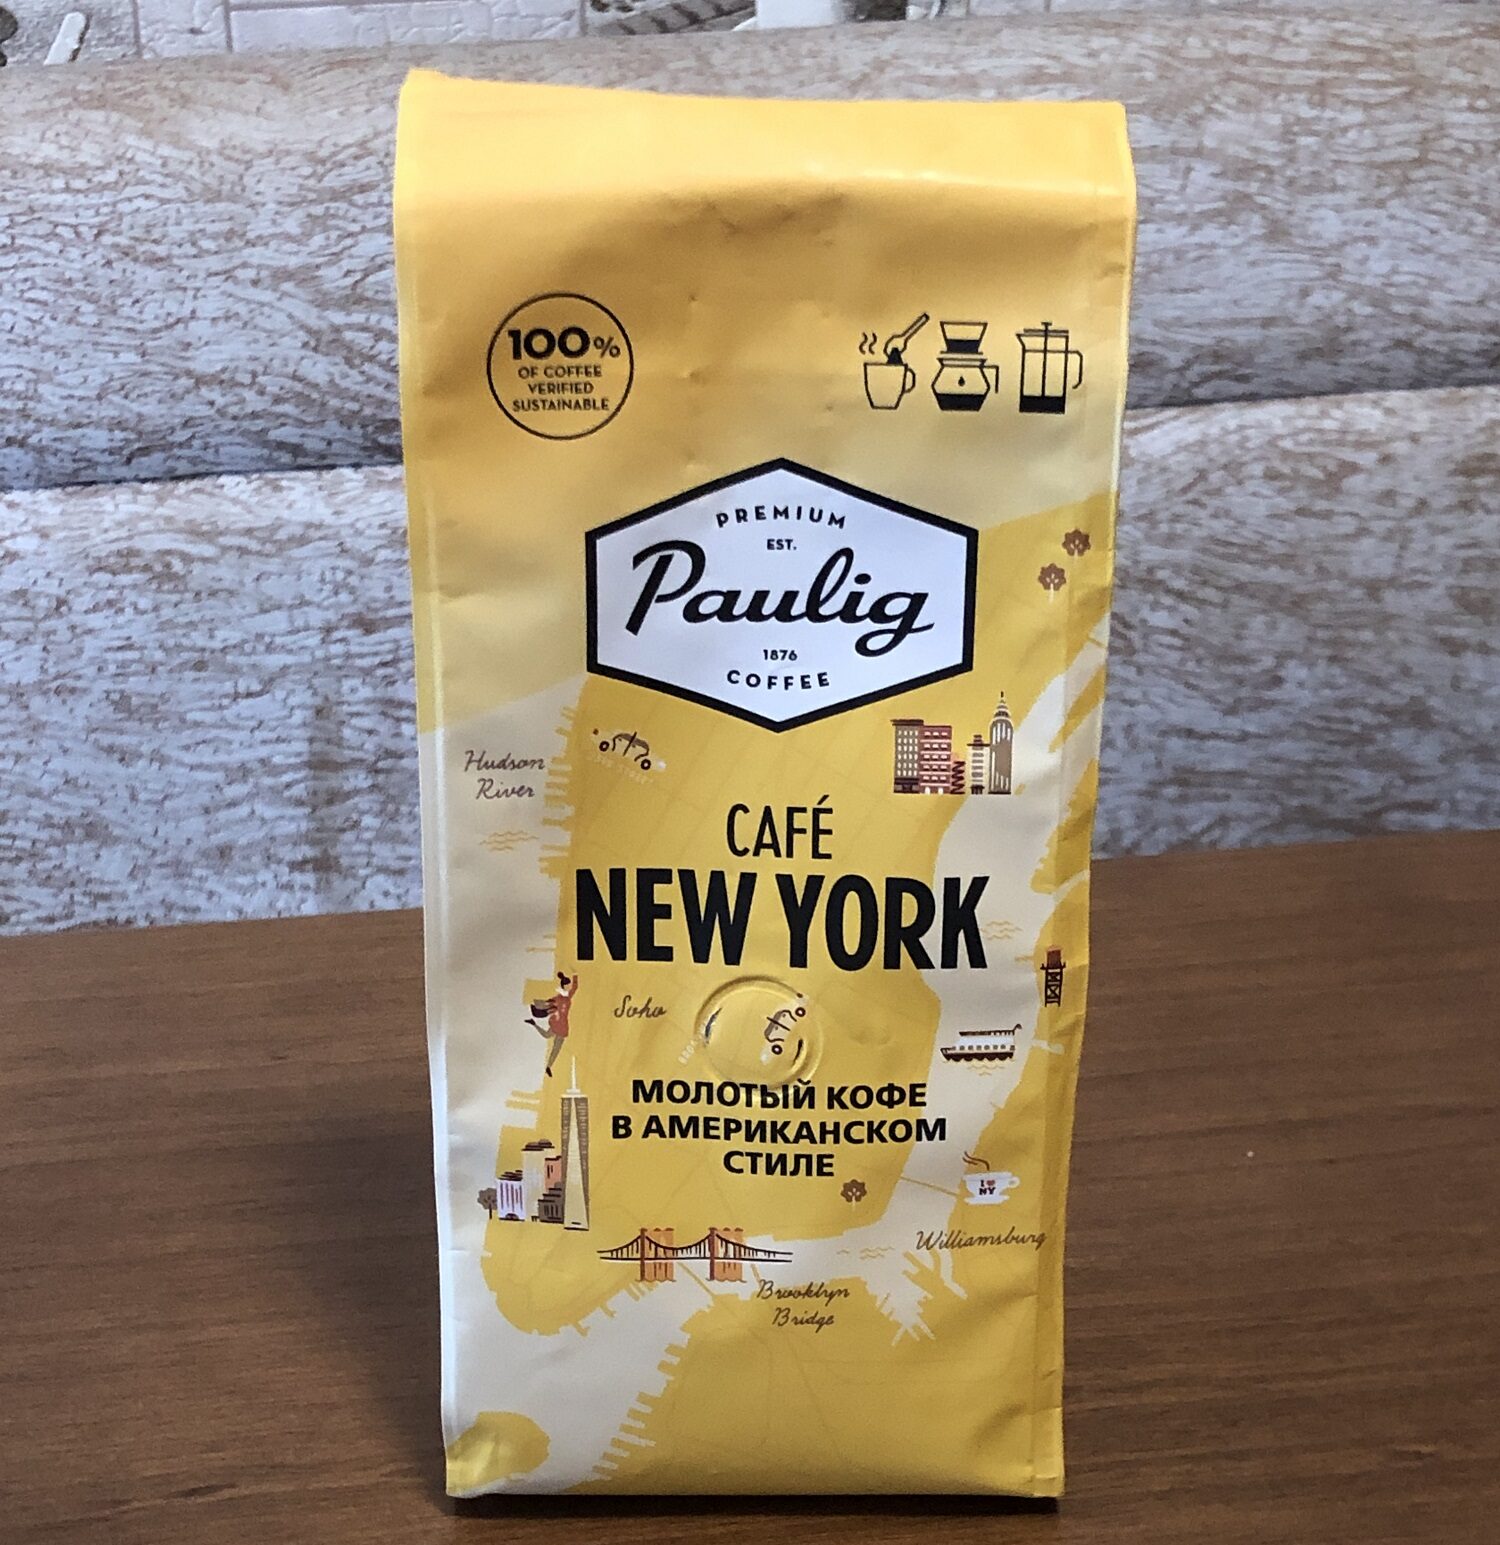 PAULIG CAFE NEW YORK . Бюджетное зерно хорошего качества